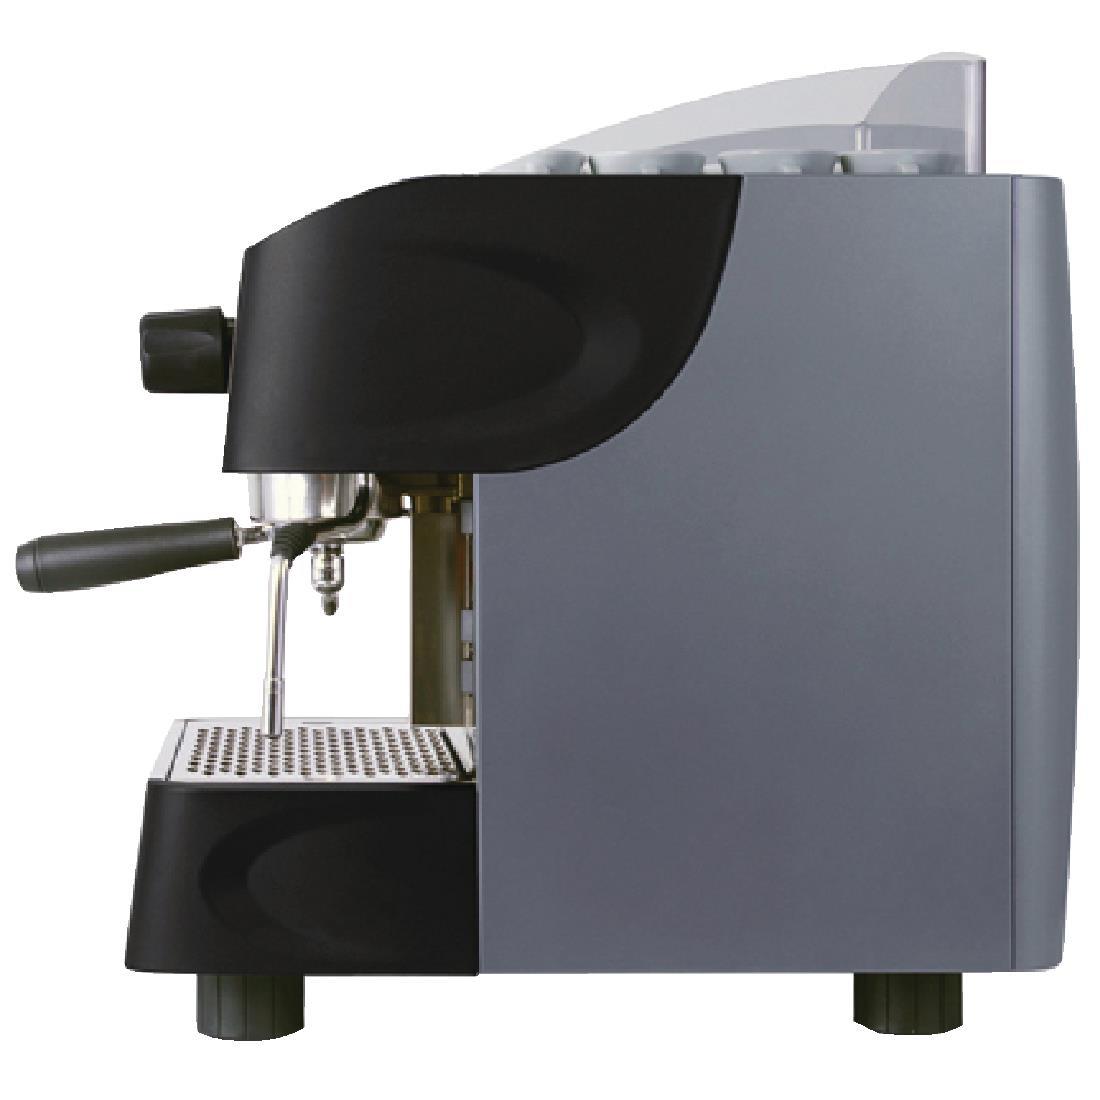 Grigia Club Coffee Machine 4Ltr - DL256  - 2